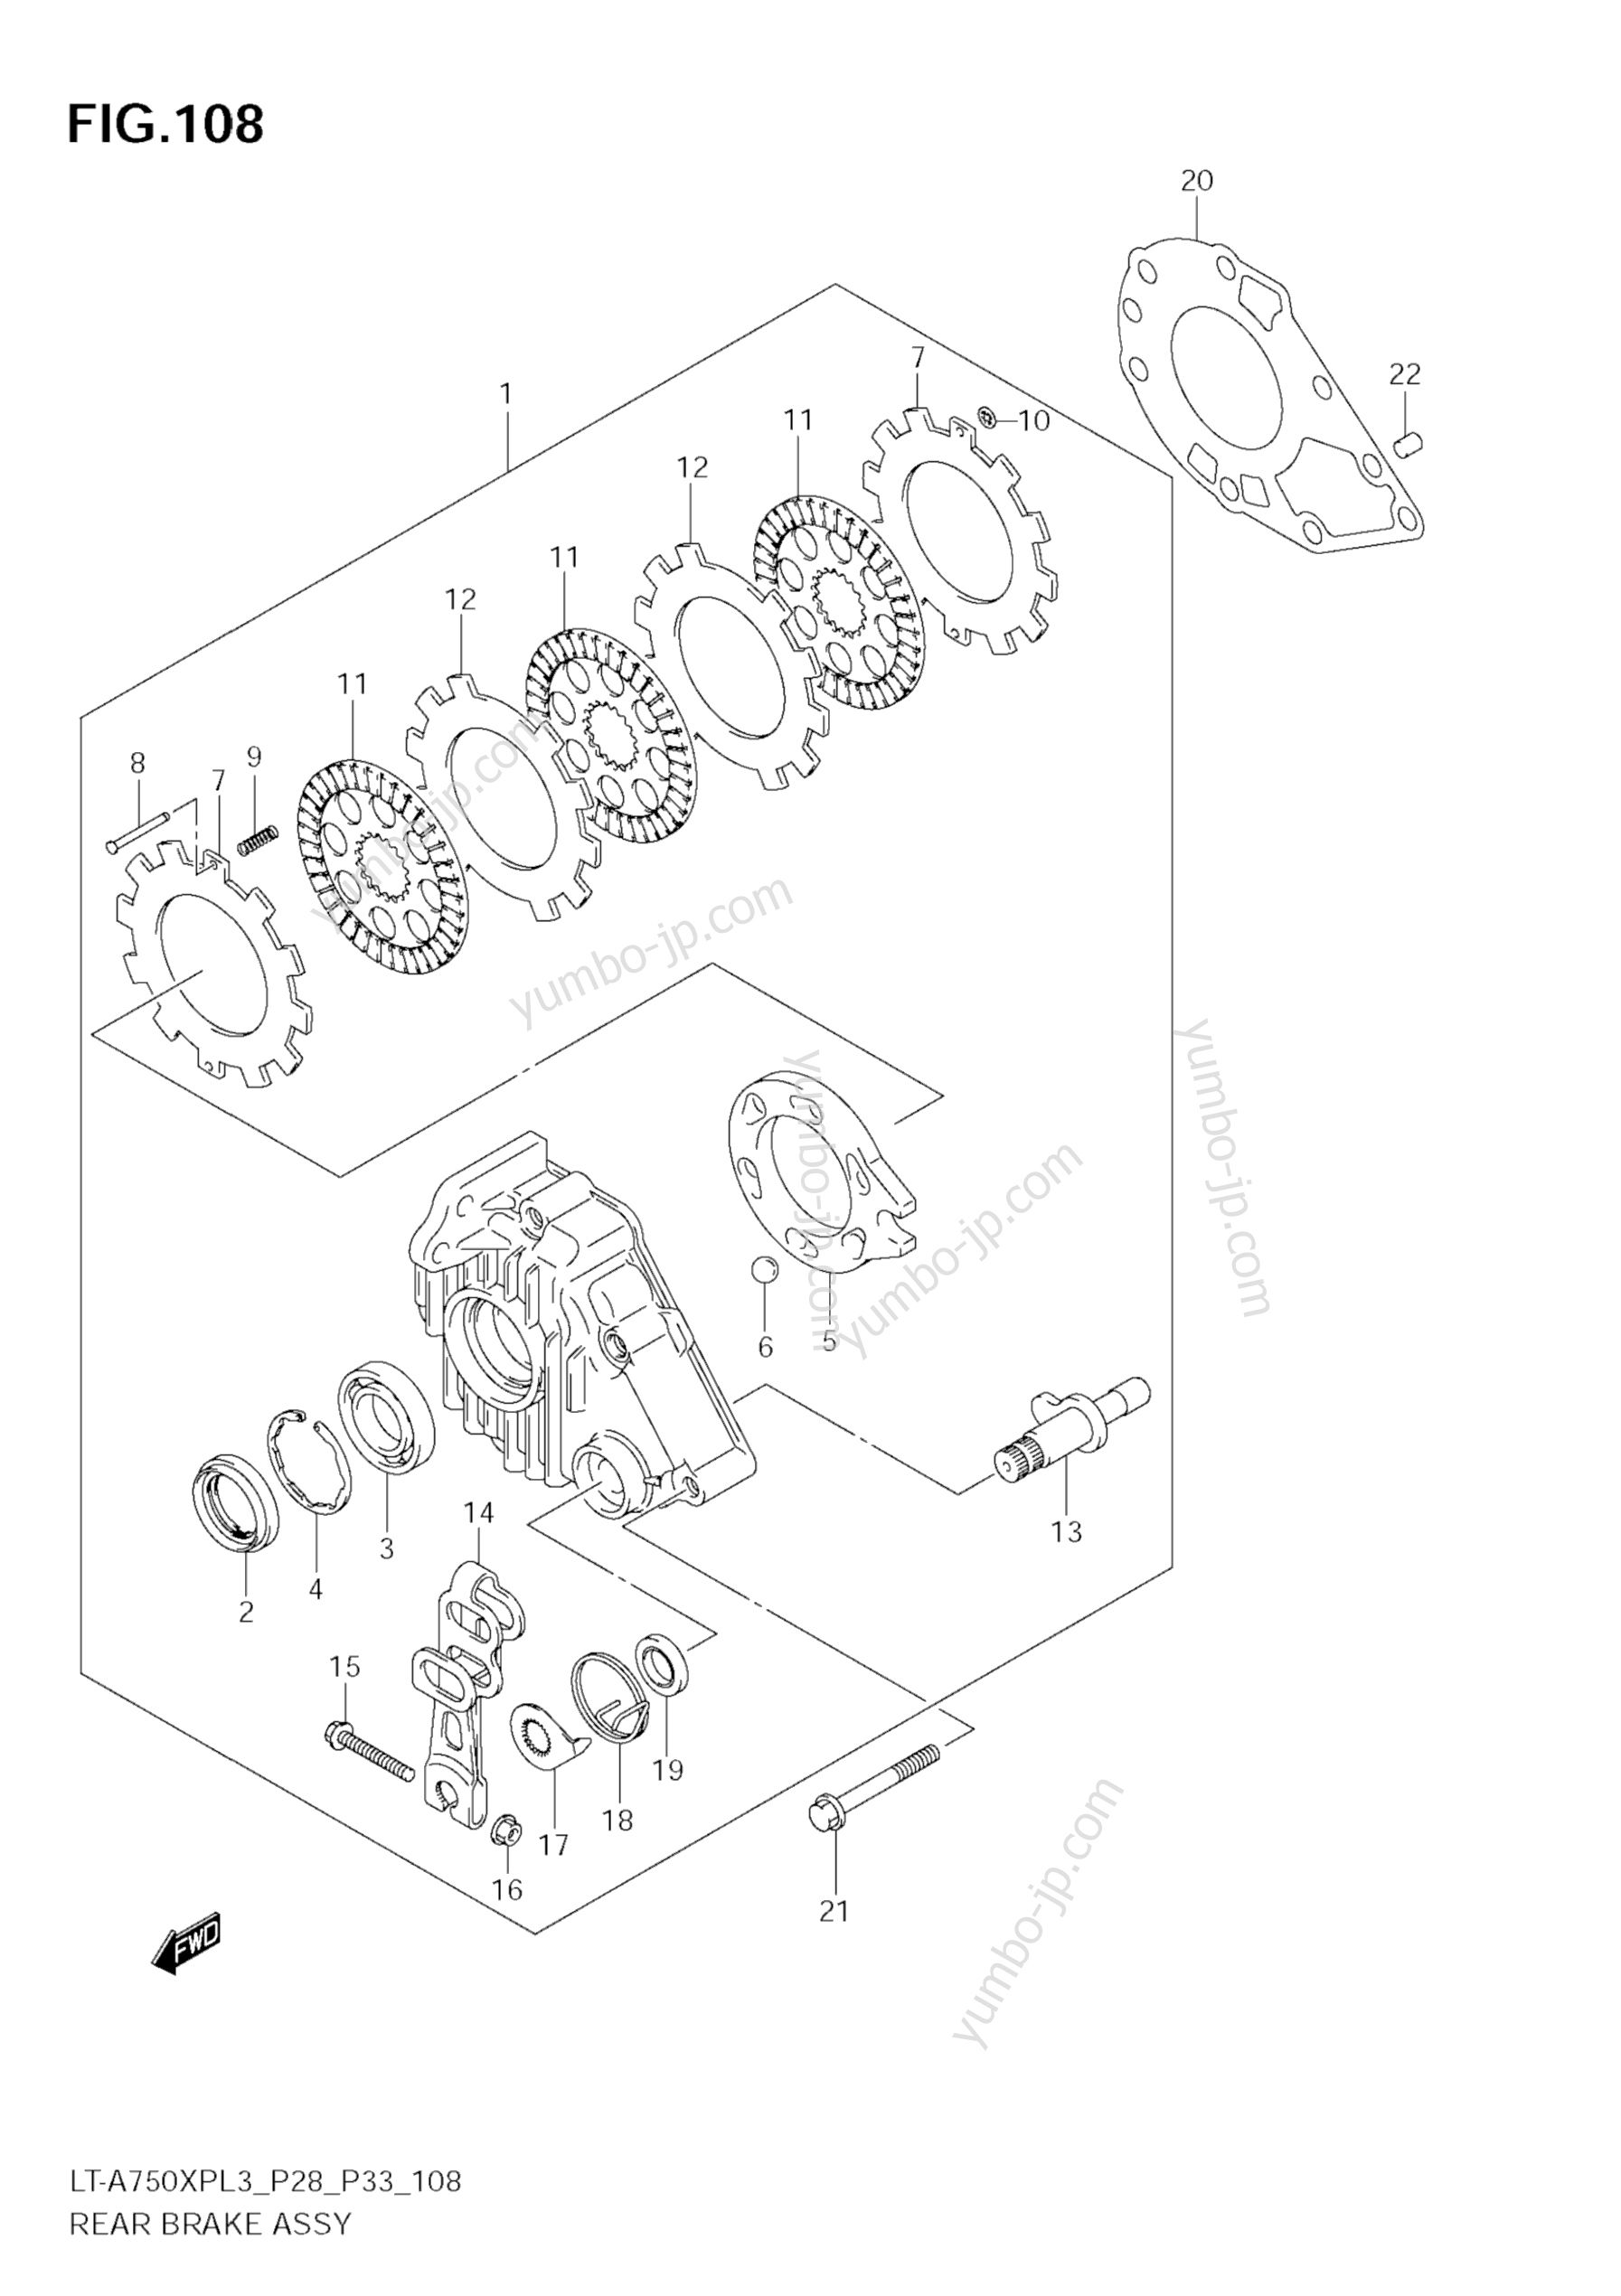 REAR BRAKE ASSY для квадроциклов SUZUKI KingQuad (LT-A750XP) 2013 г.